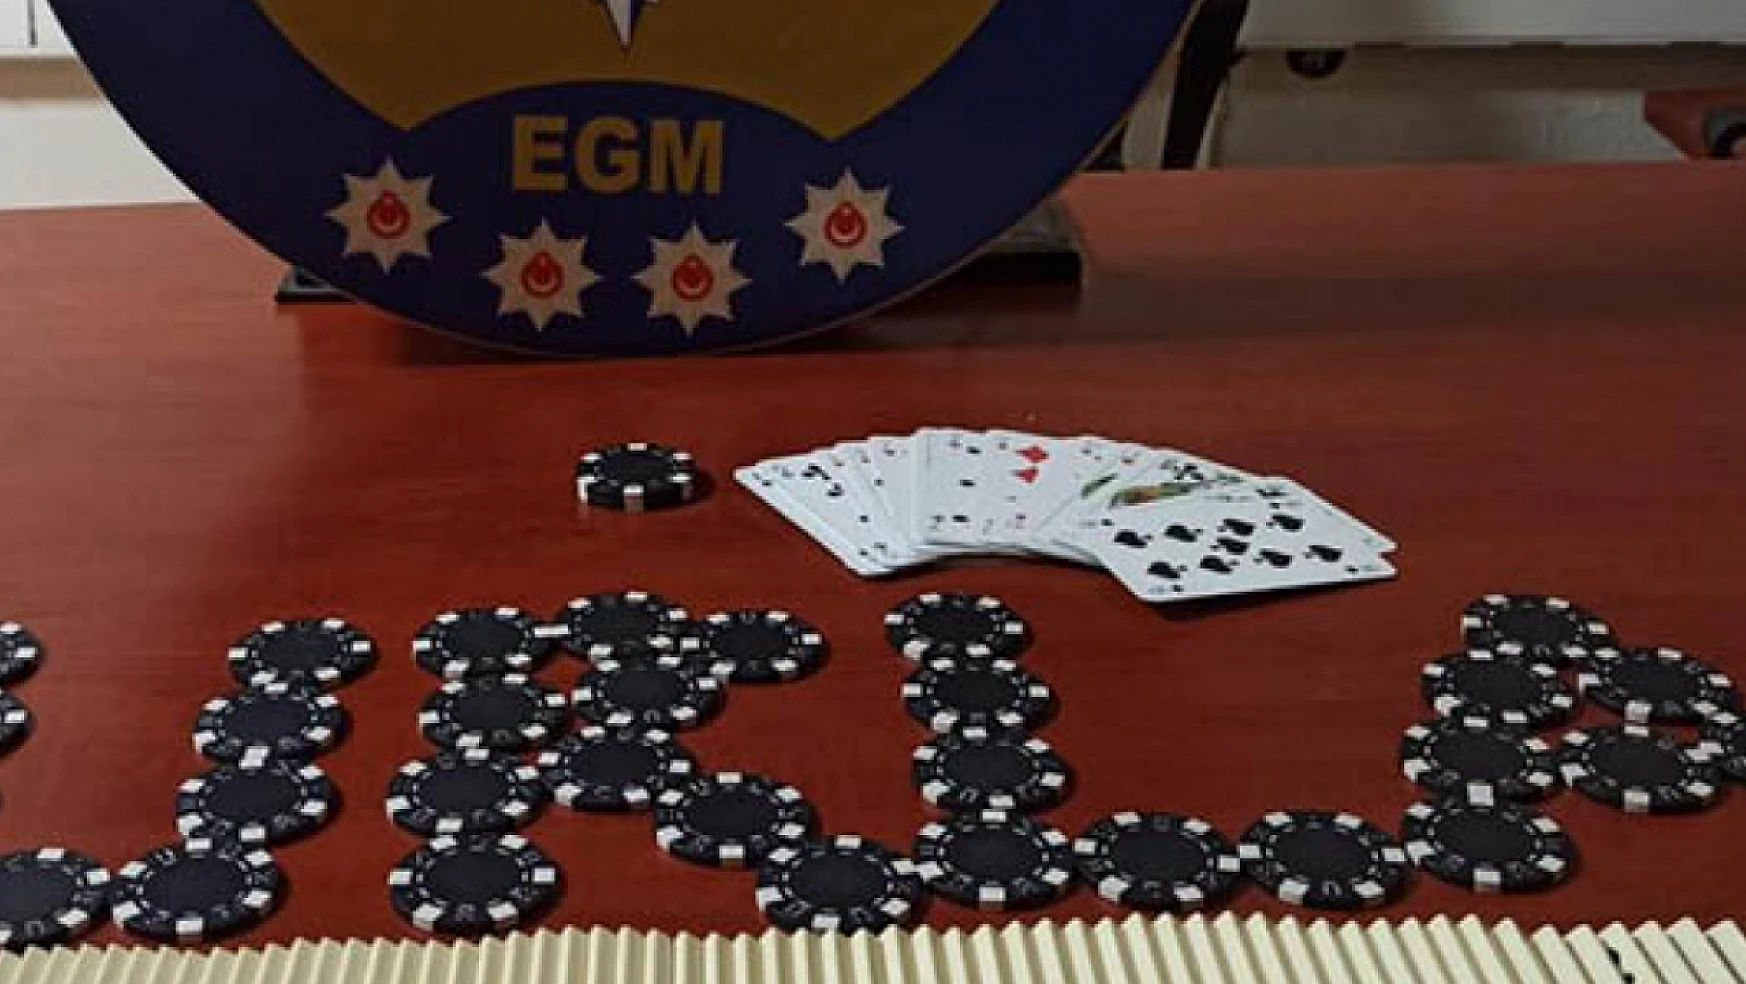 Konya'da kumar oynayan 37 kişiye para cezası kesildi